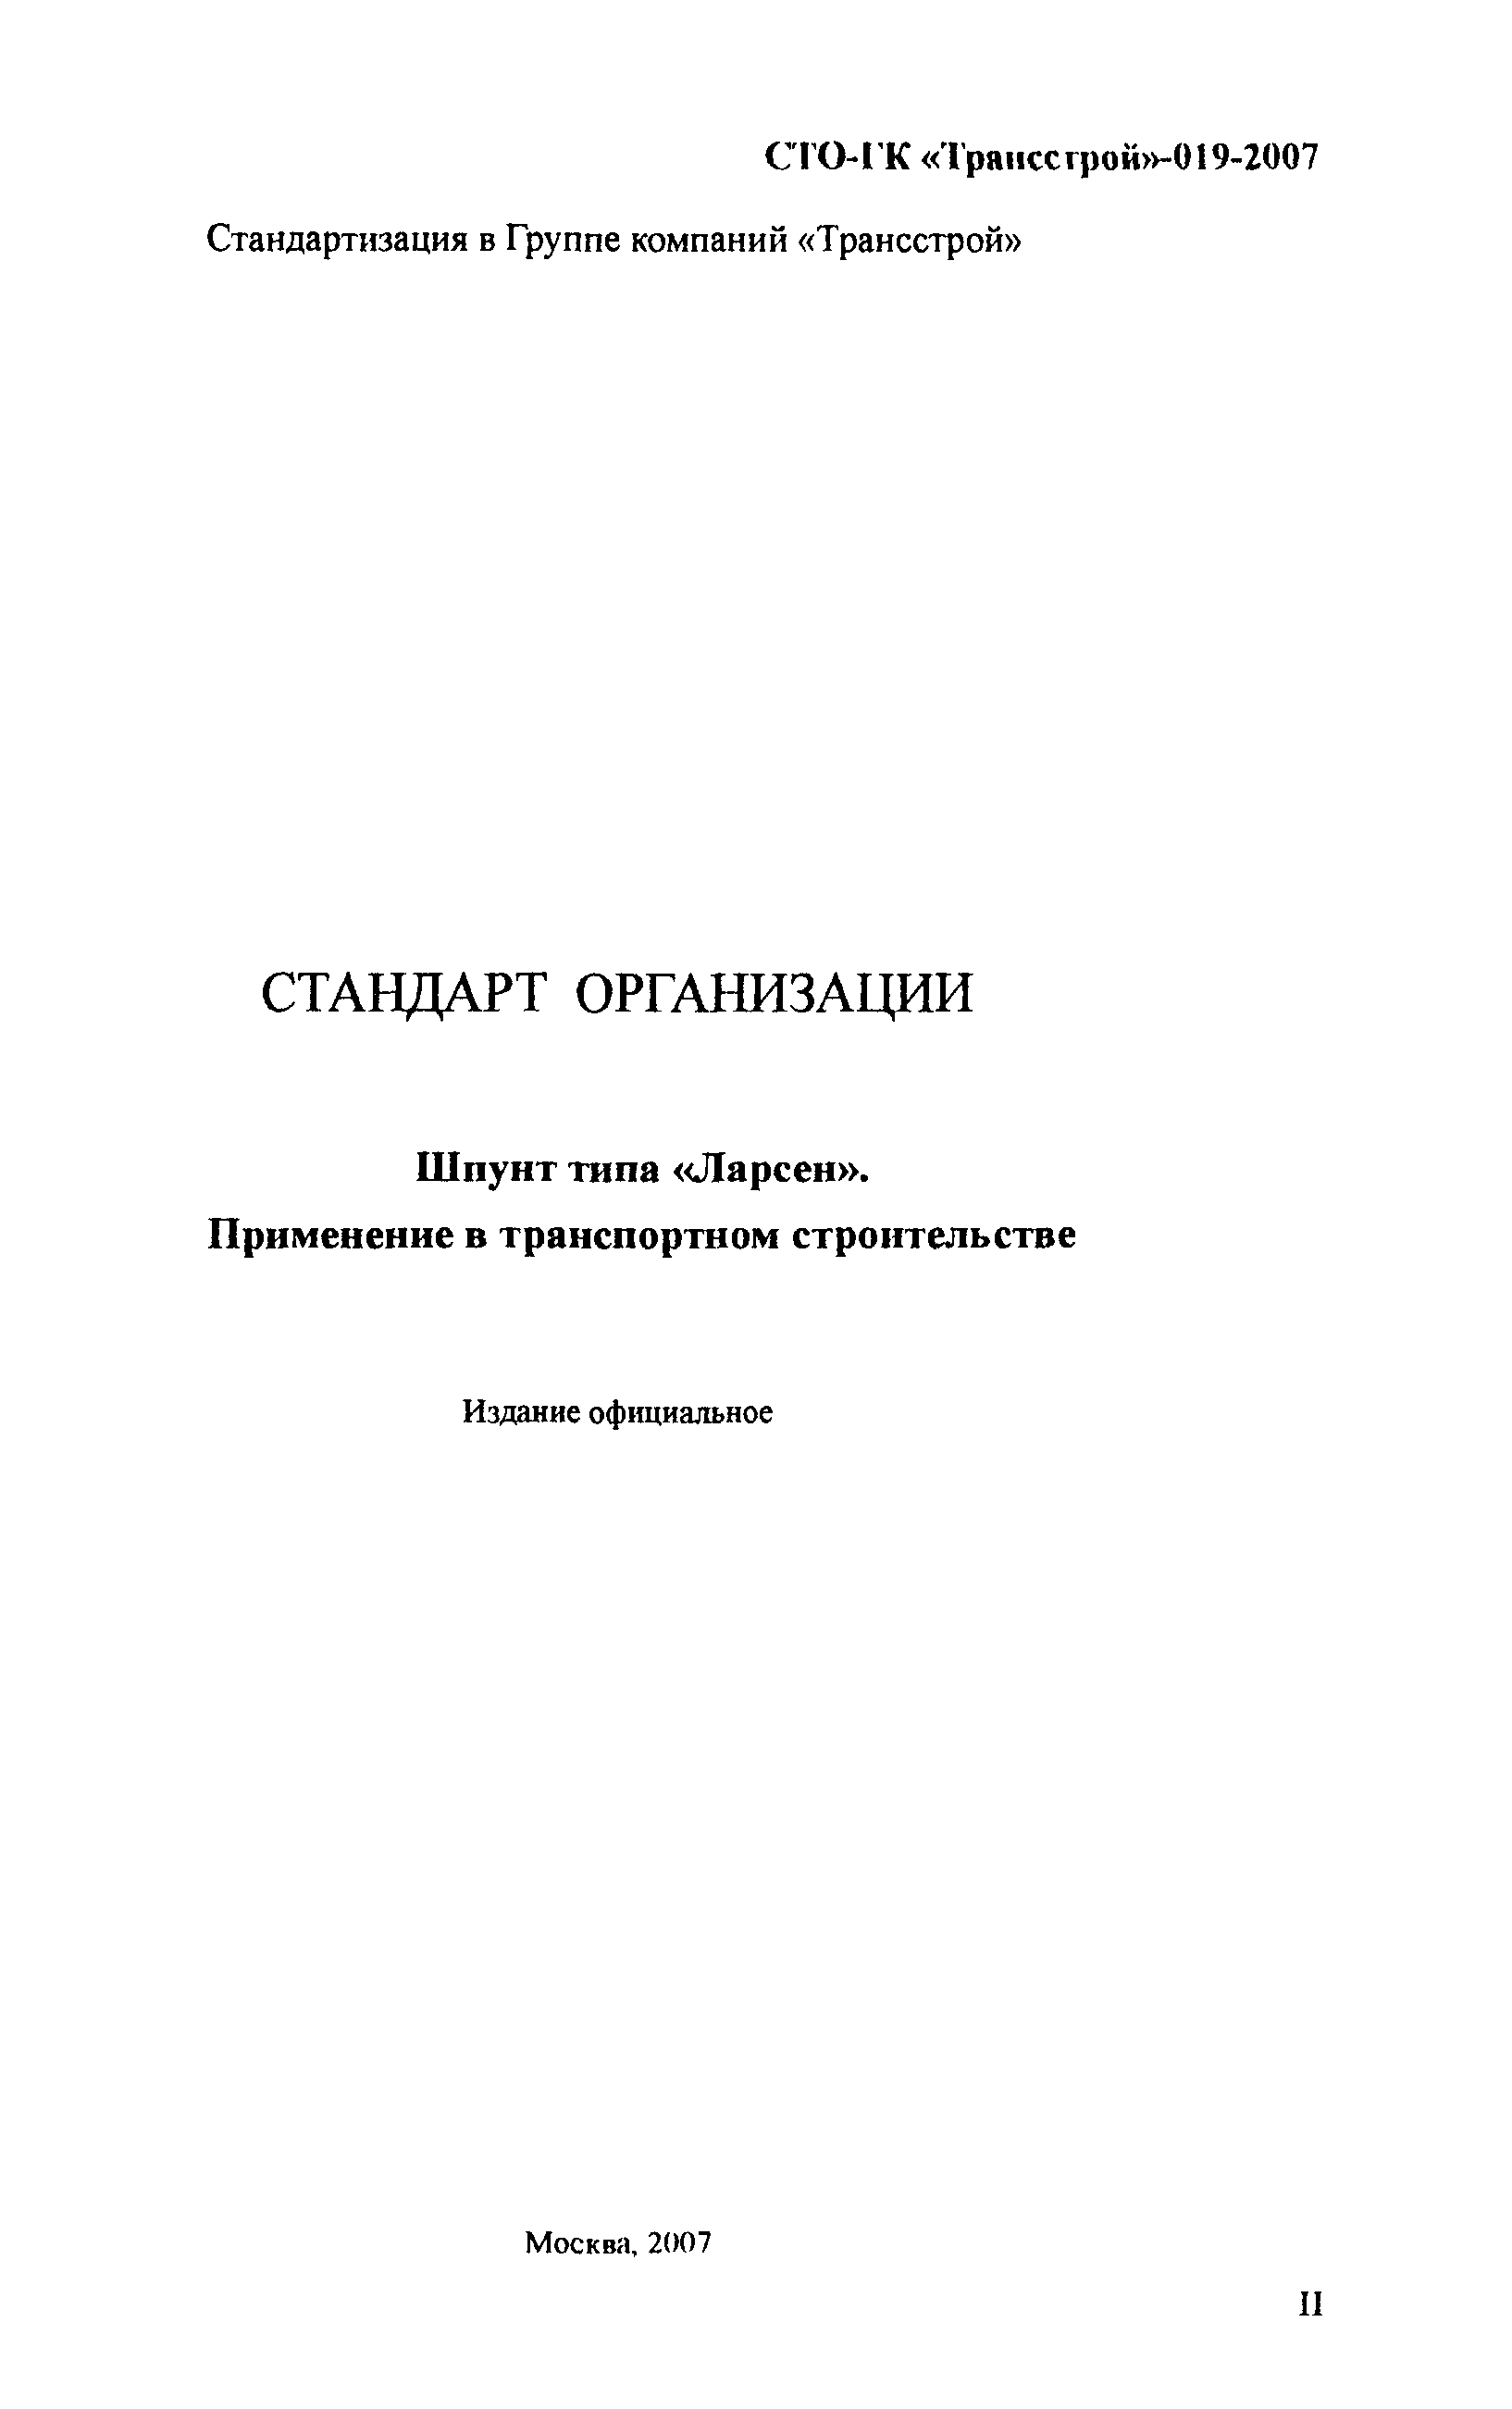 СТО-ГК "Трансстрой" 019-2007